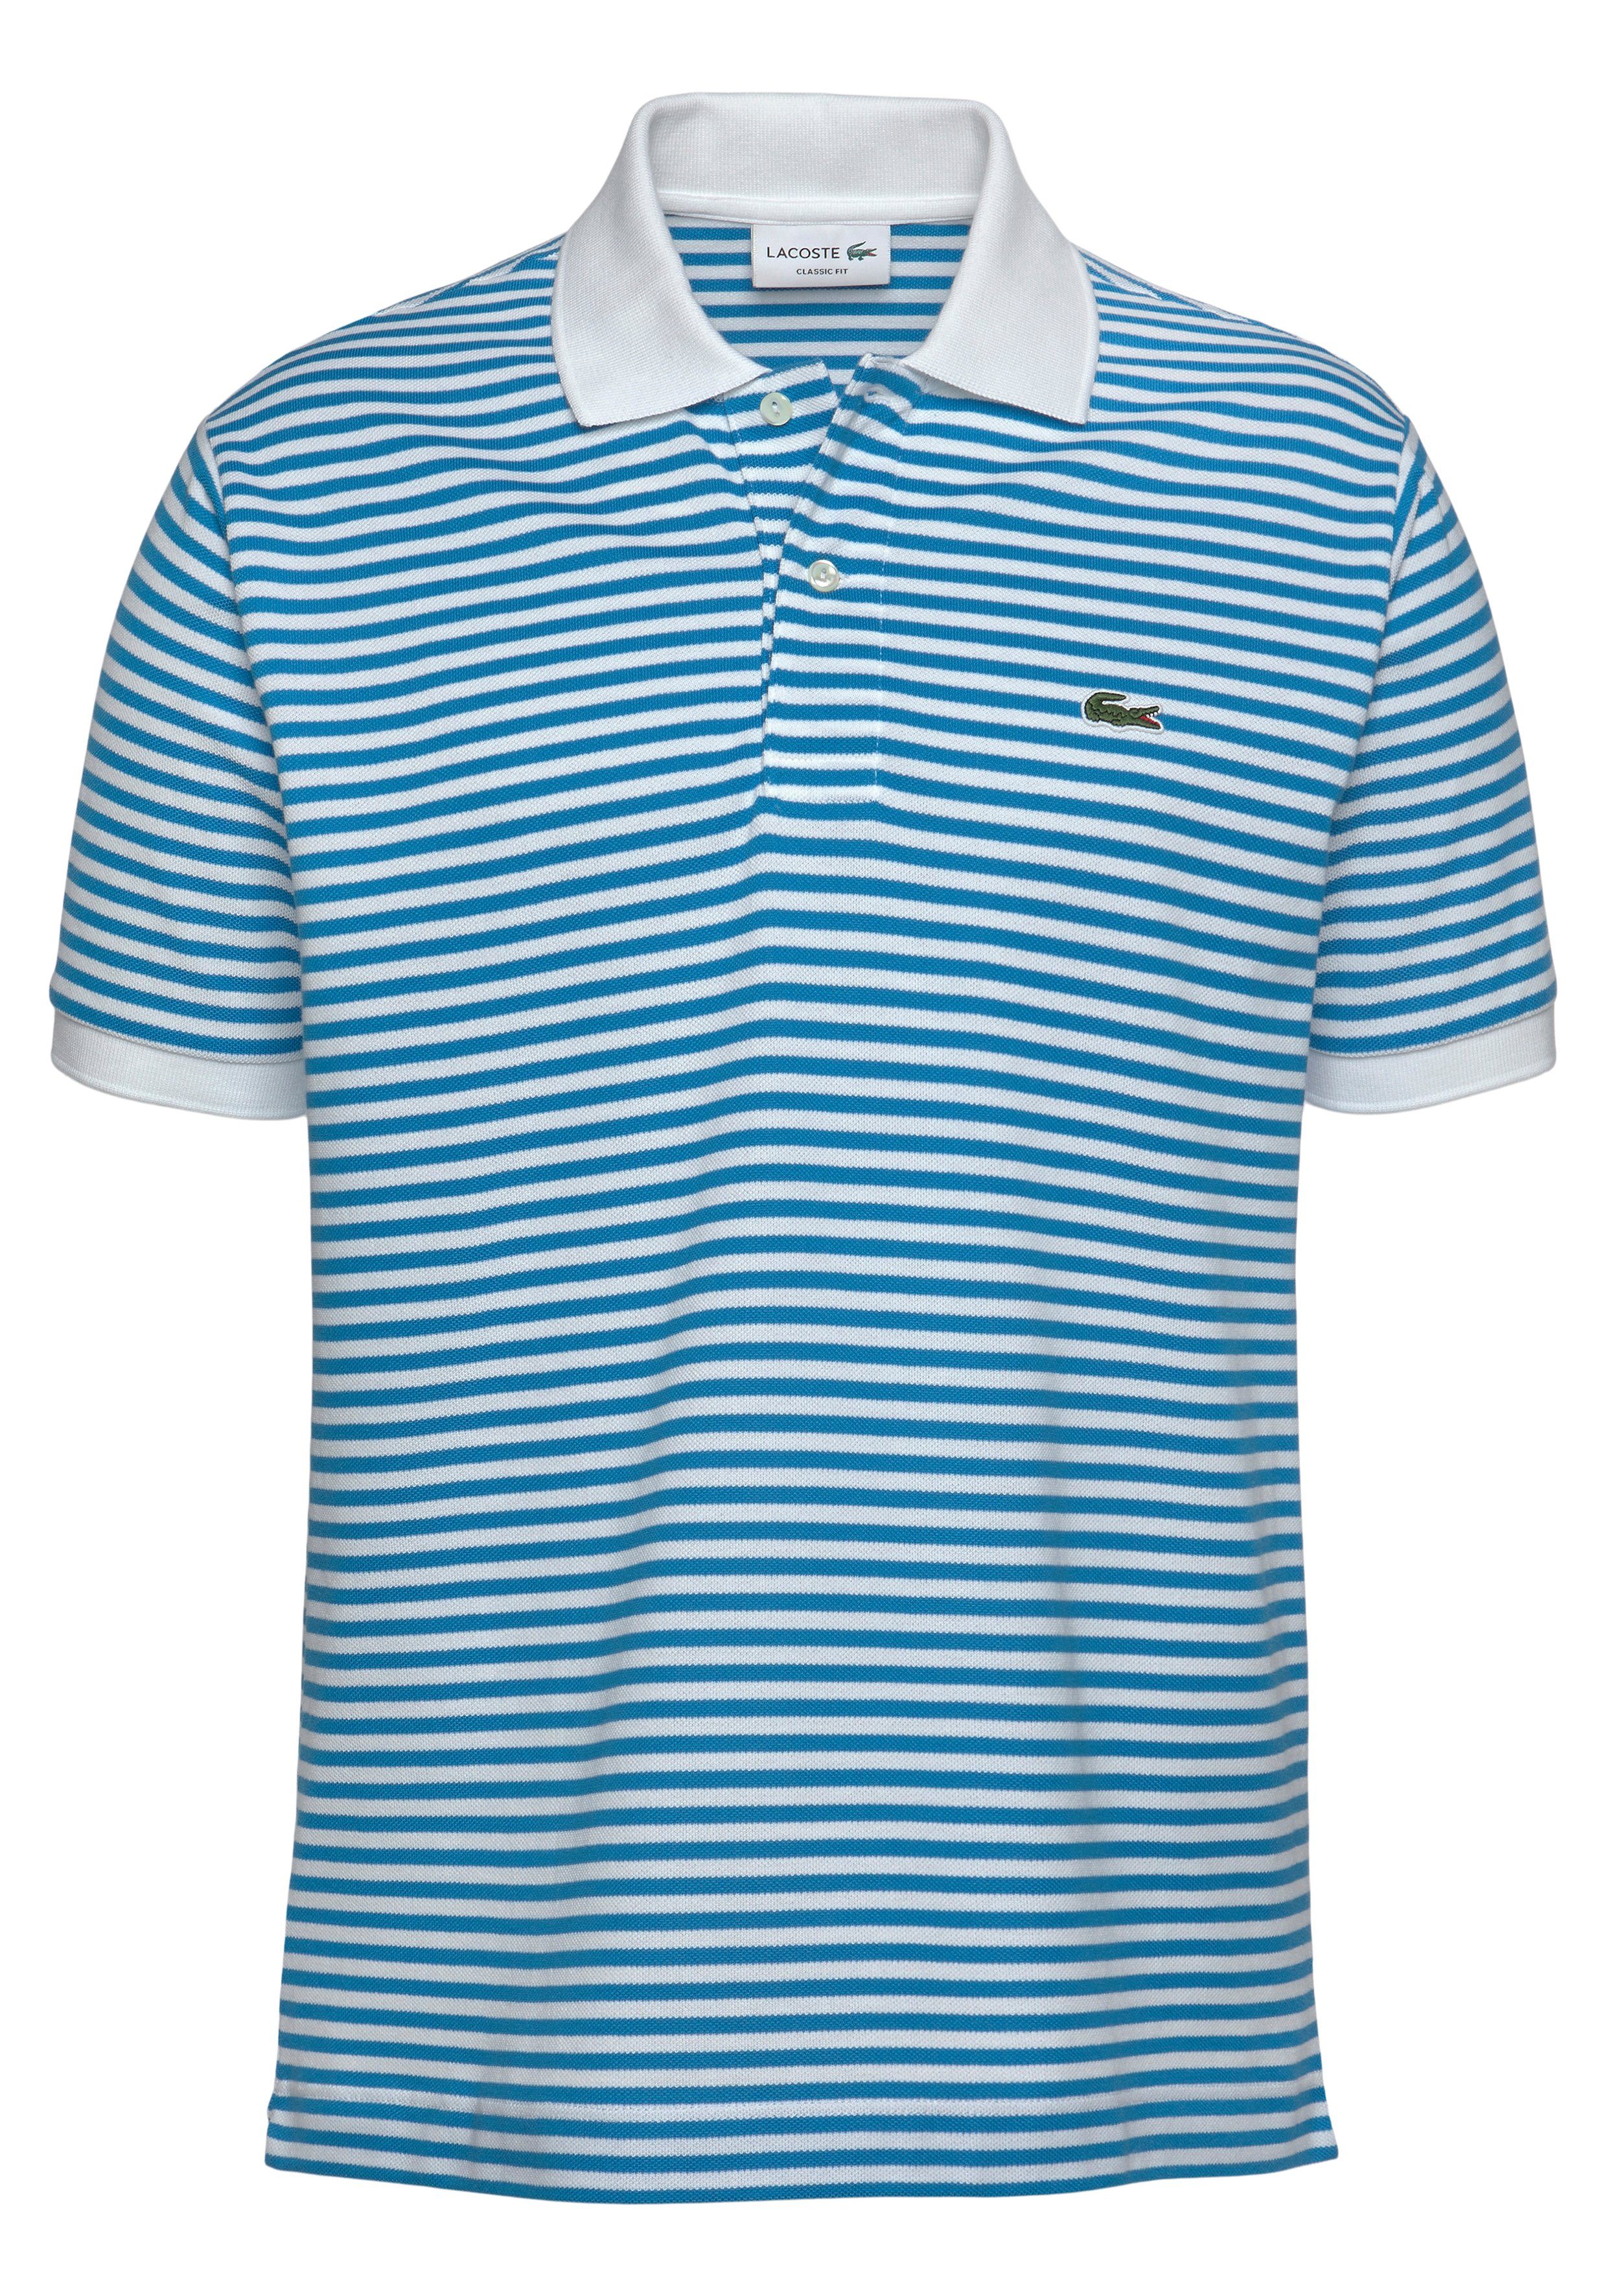 Lacoste Poloshirt, Mit feinen Streifen online kaufen | OTTO